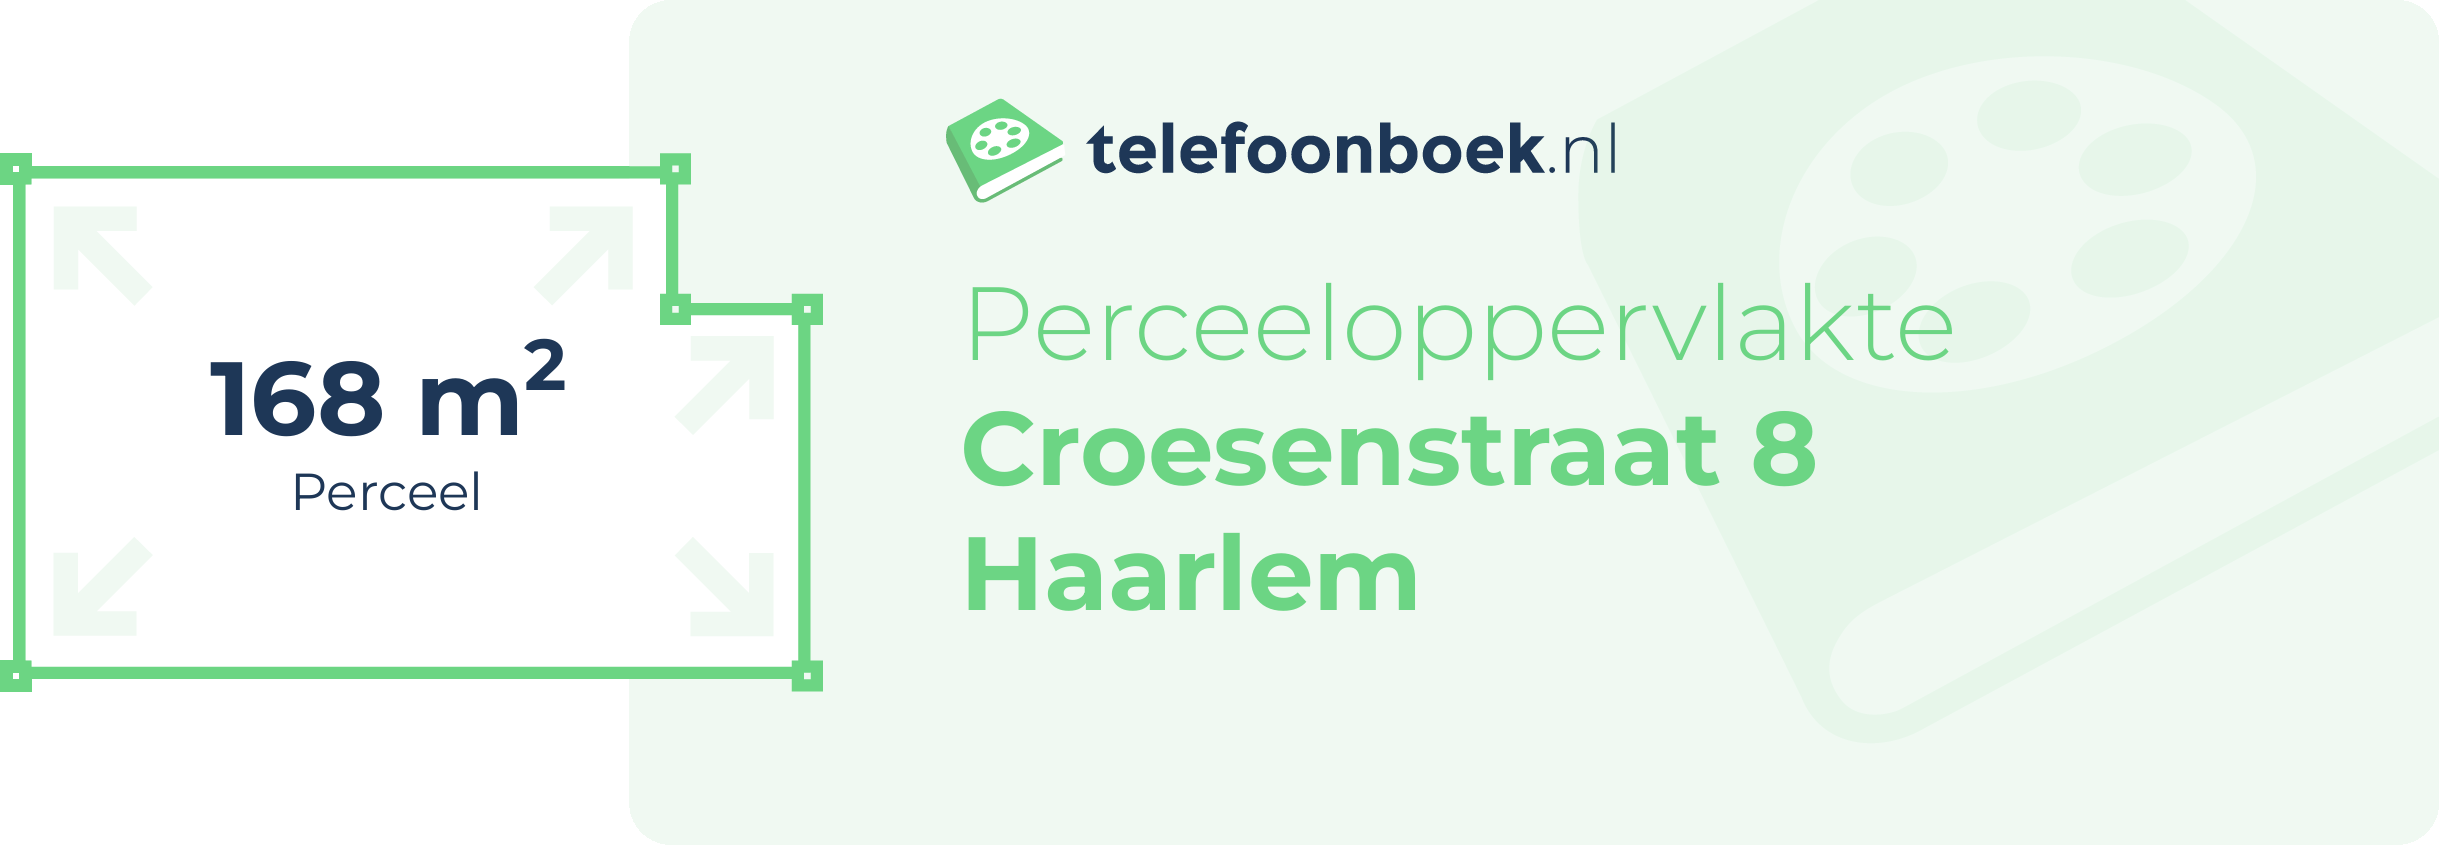 Perceeloppervlakte Croesenstraat 8 Haarlem